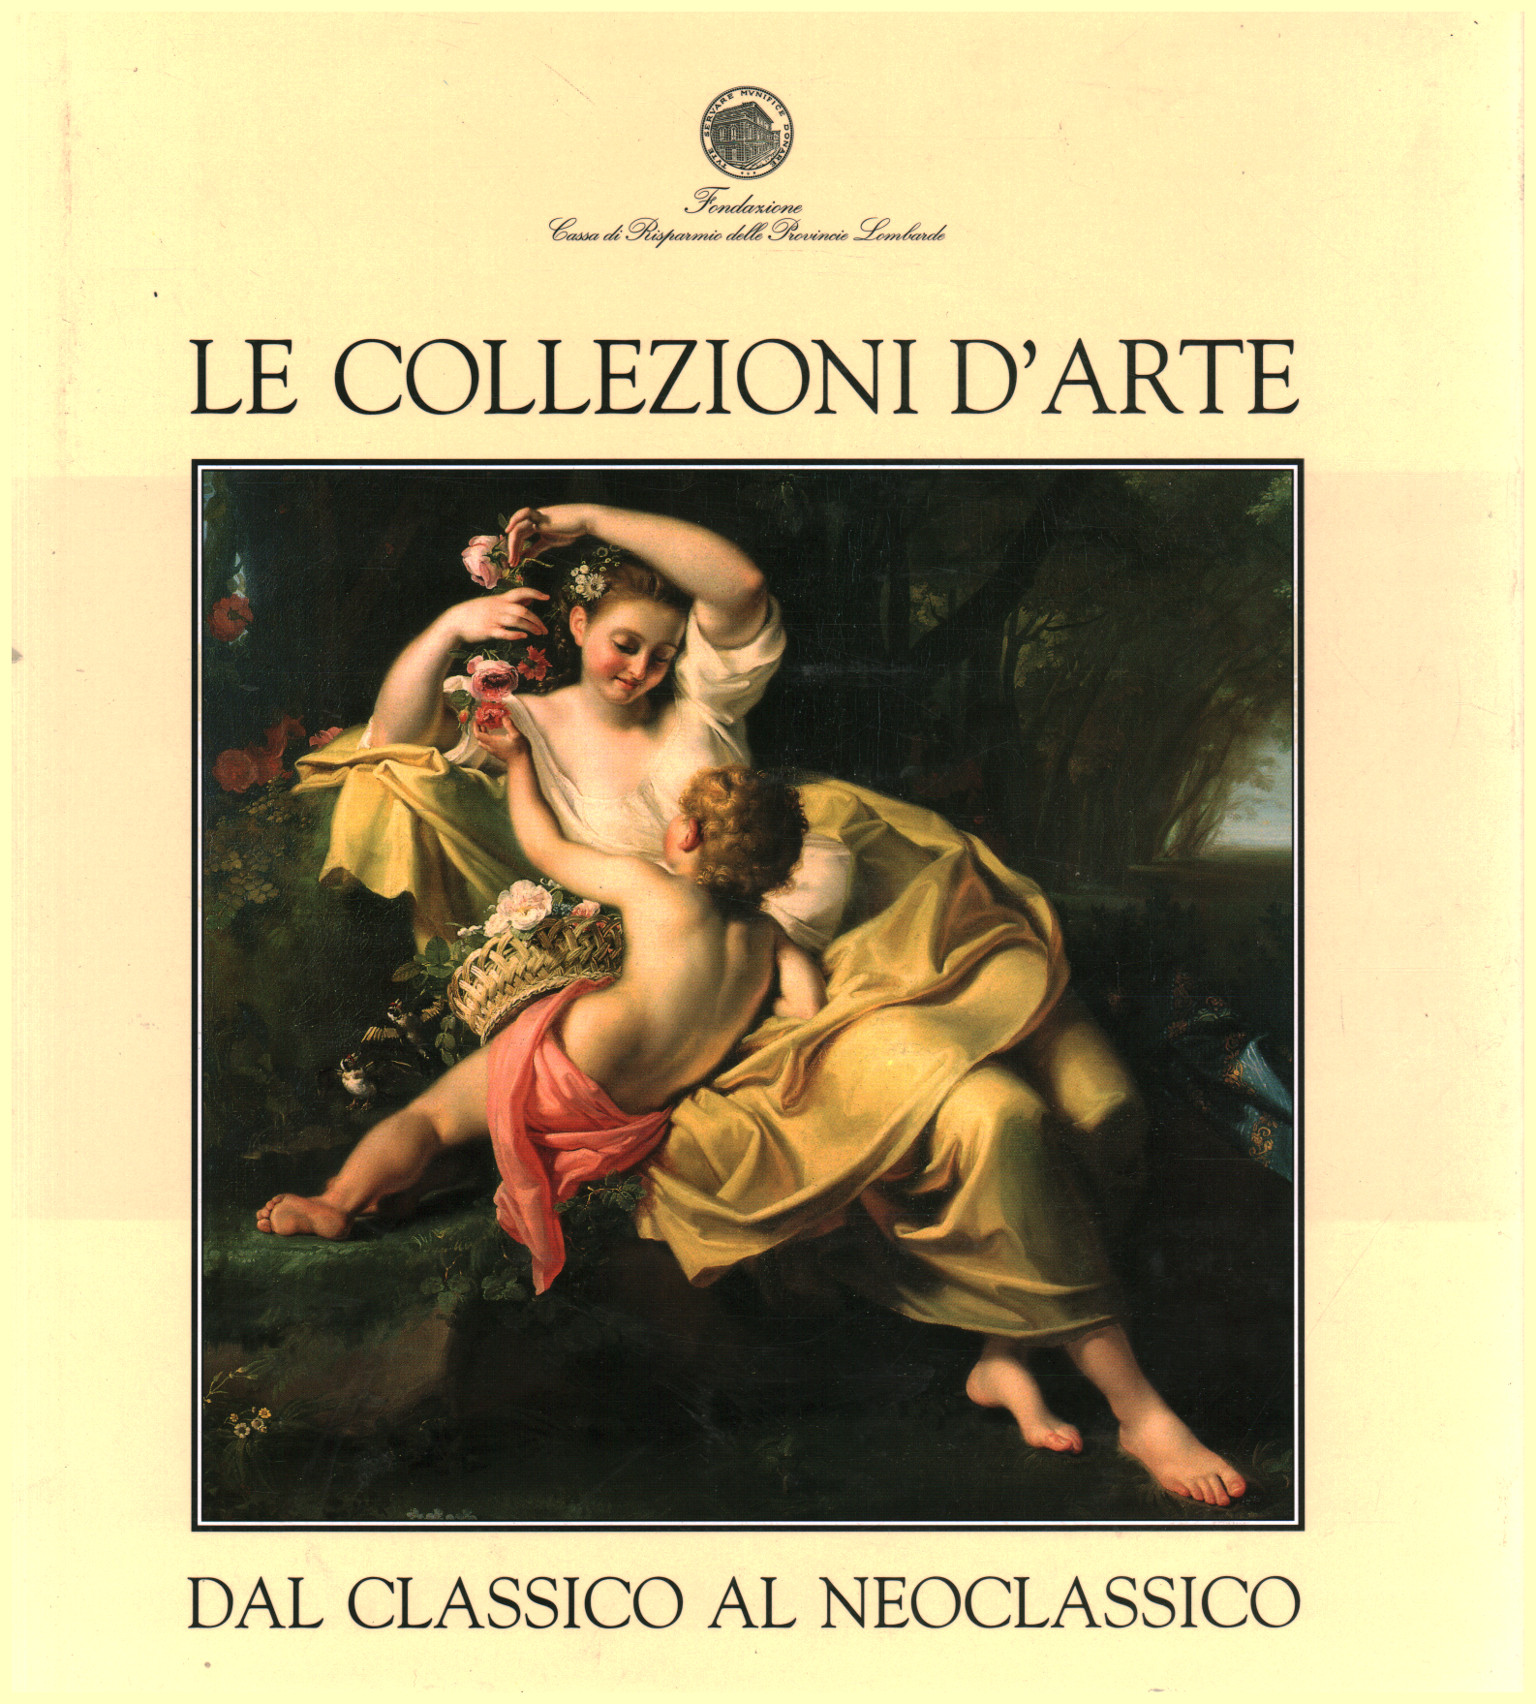 Le collezioni d'arte dal classico al neoclassico, Maria Luisa Gatti Perer